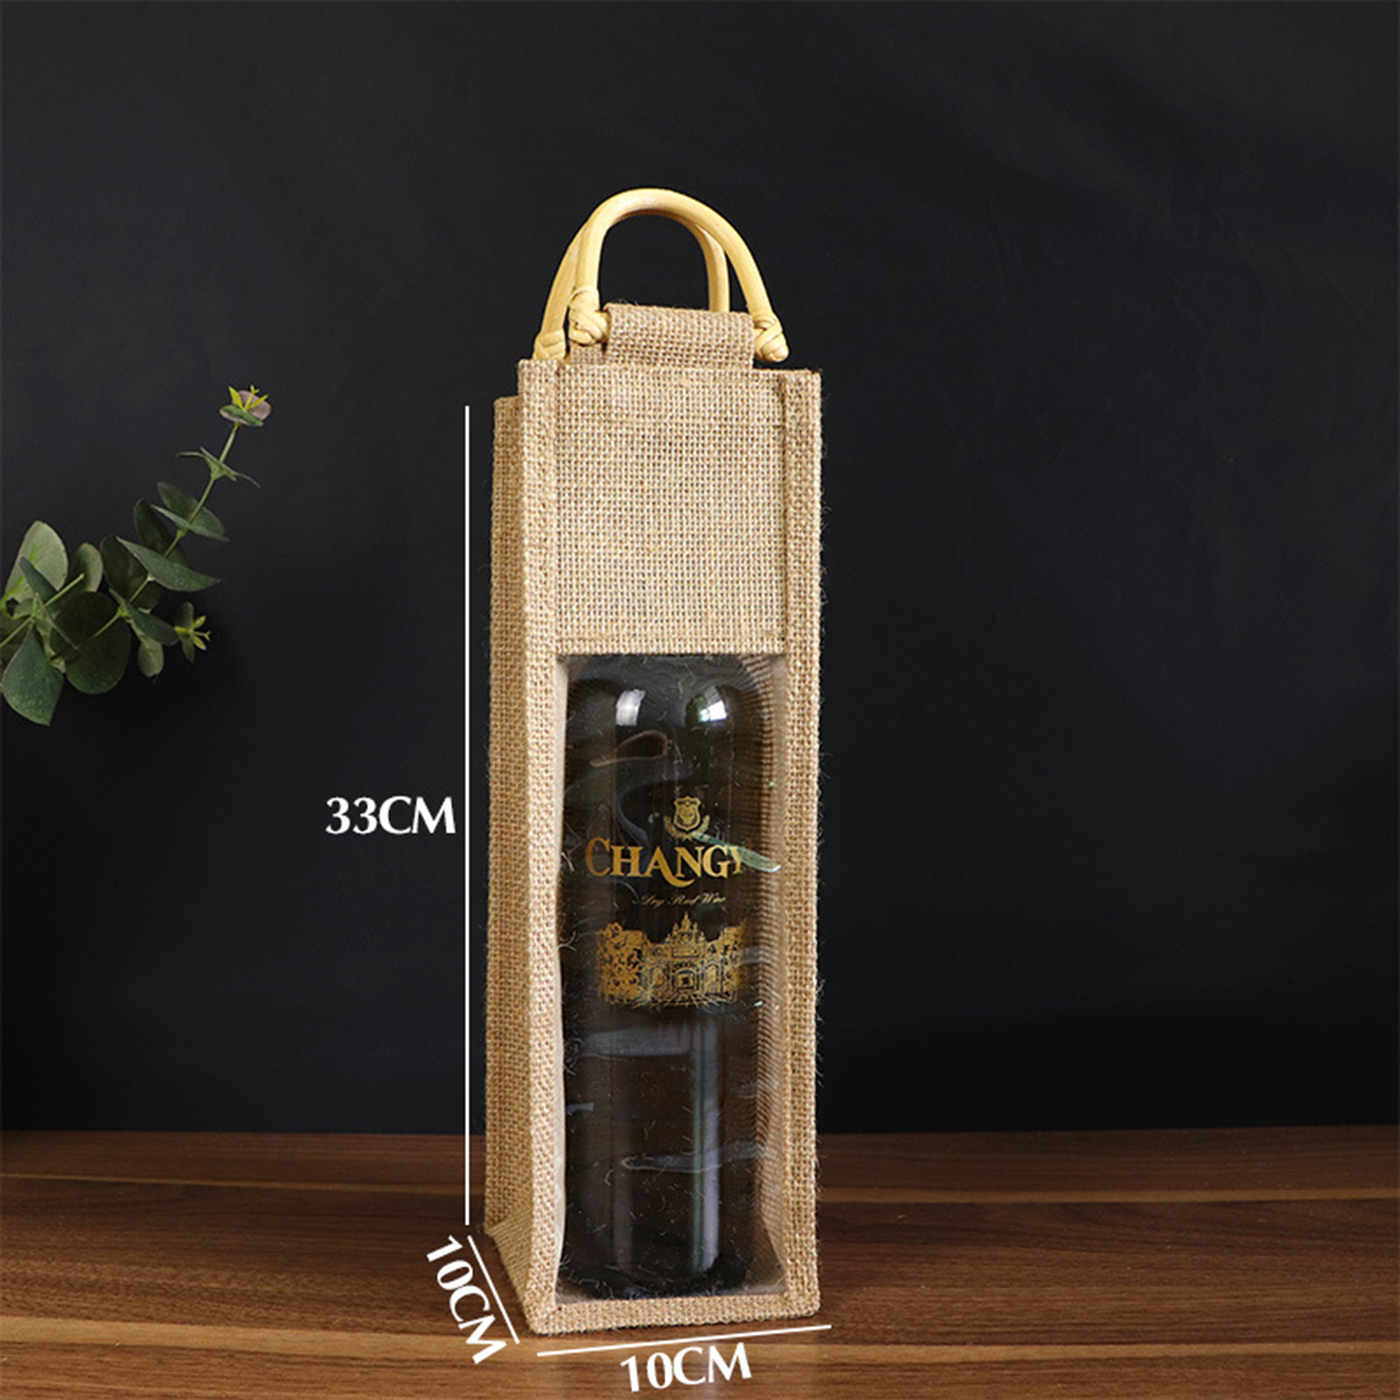 Clear Window Jute Wine Bag For Single Bottle3